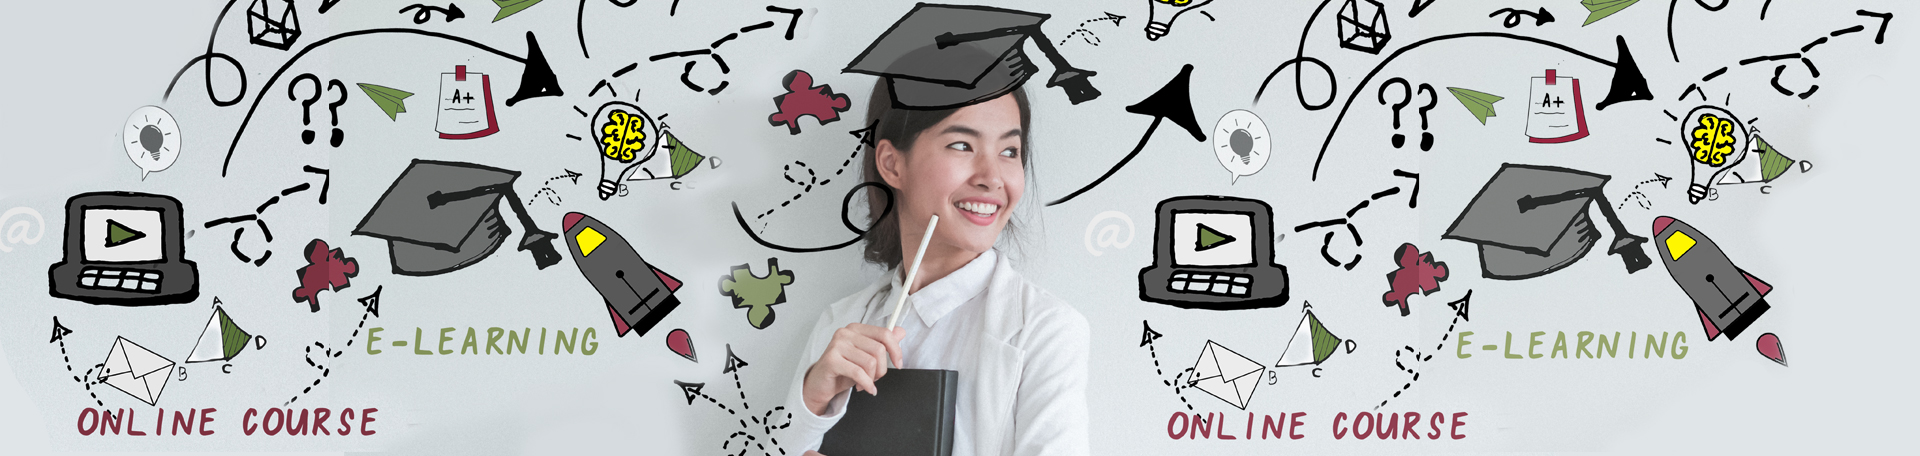 為非華語或有特殊學習困難的中學生提供與就業相關經歷的先導計劃